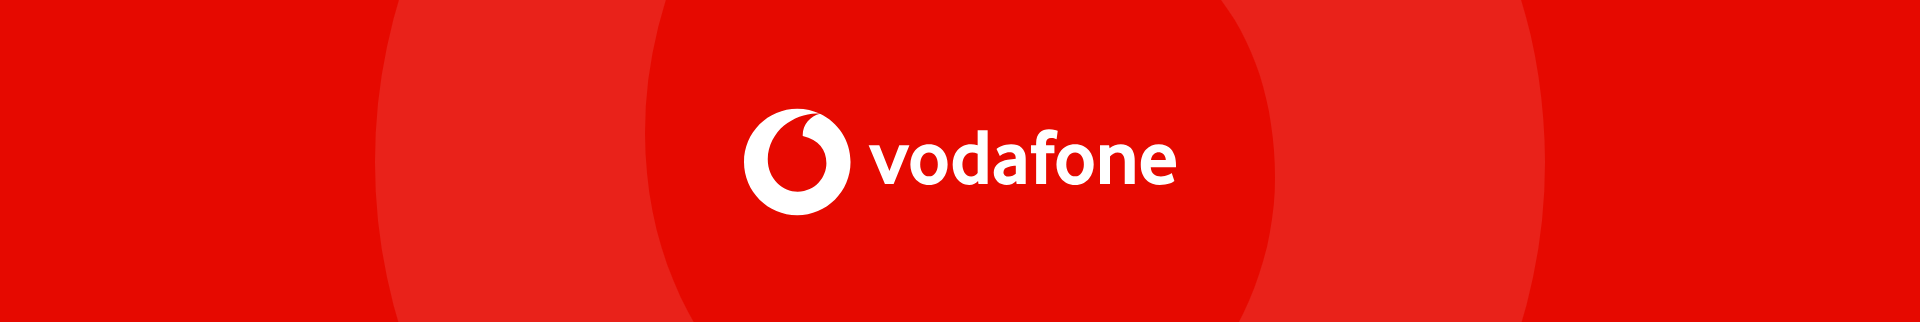 Vodafone Deutschland - Jobs background